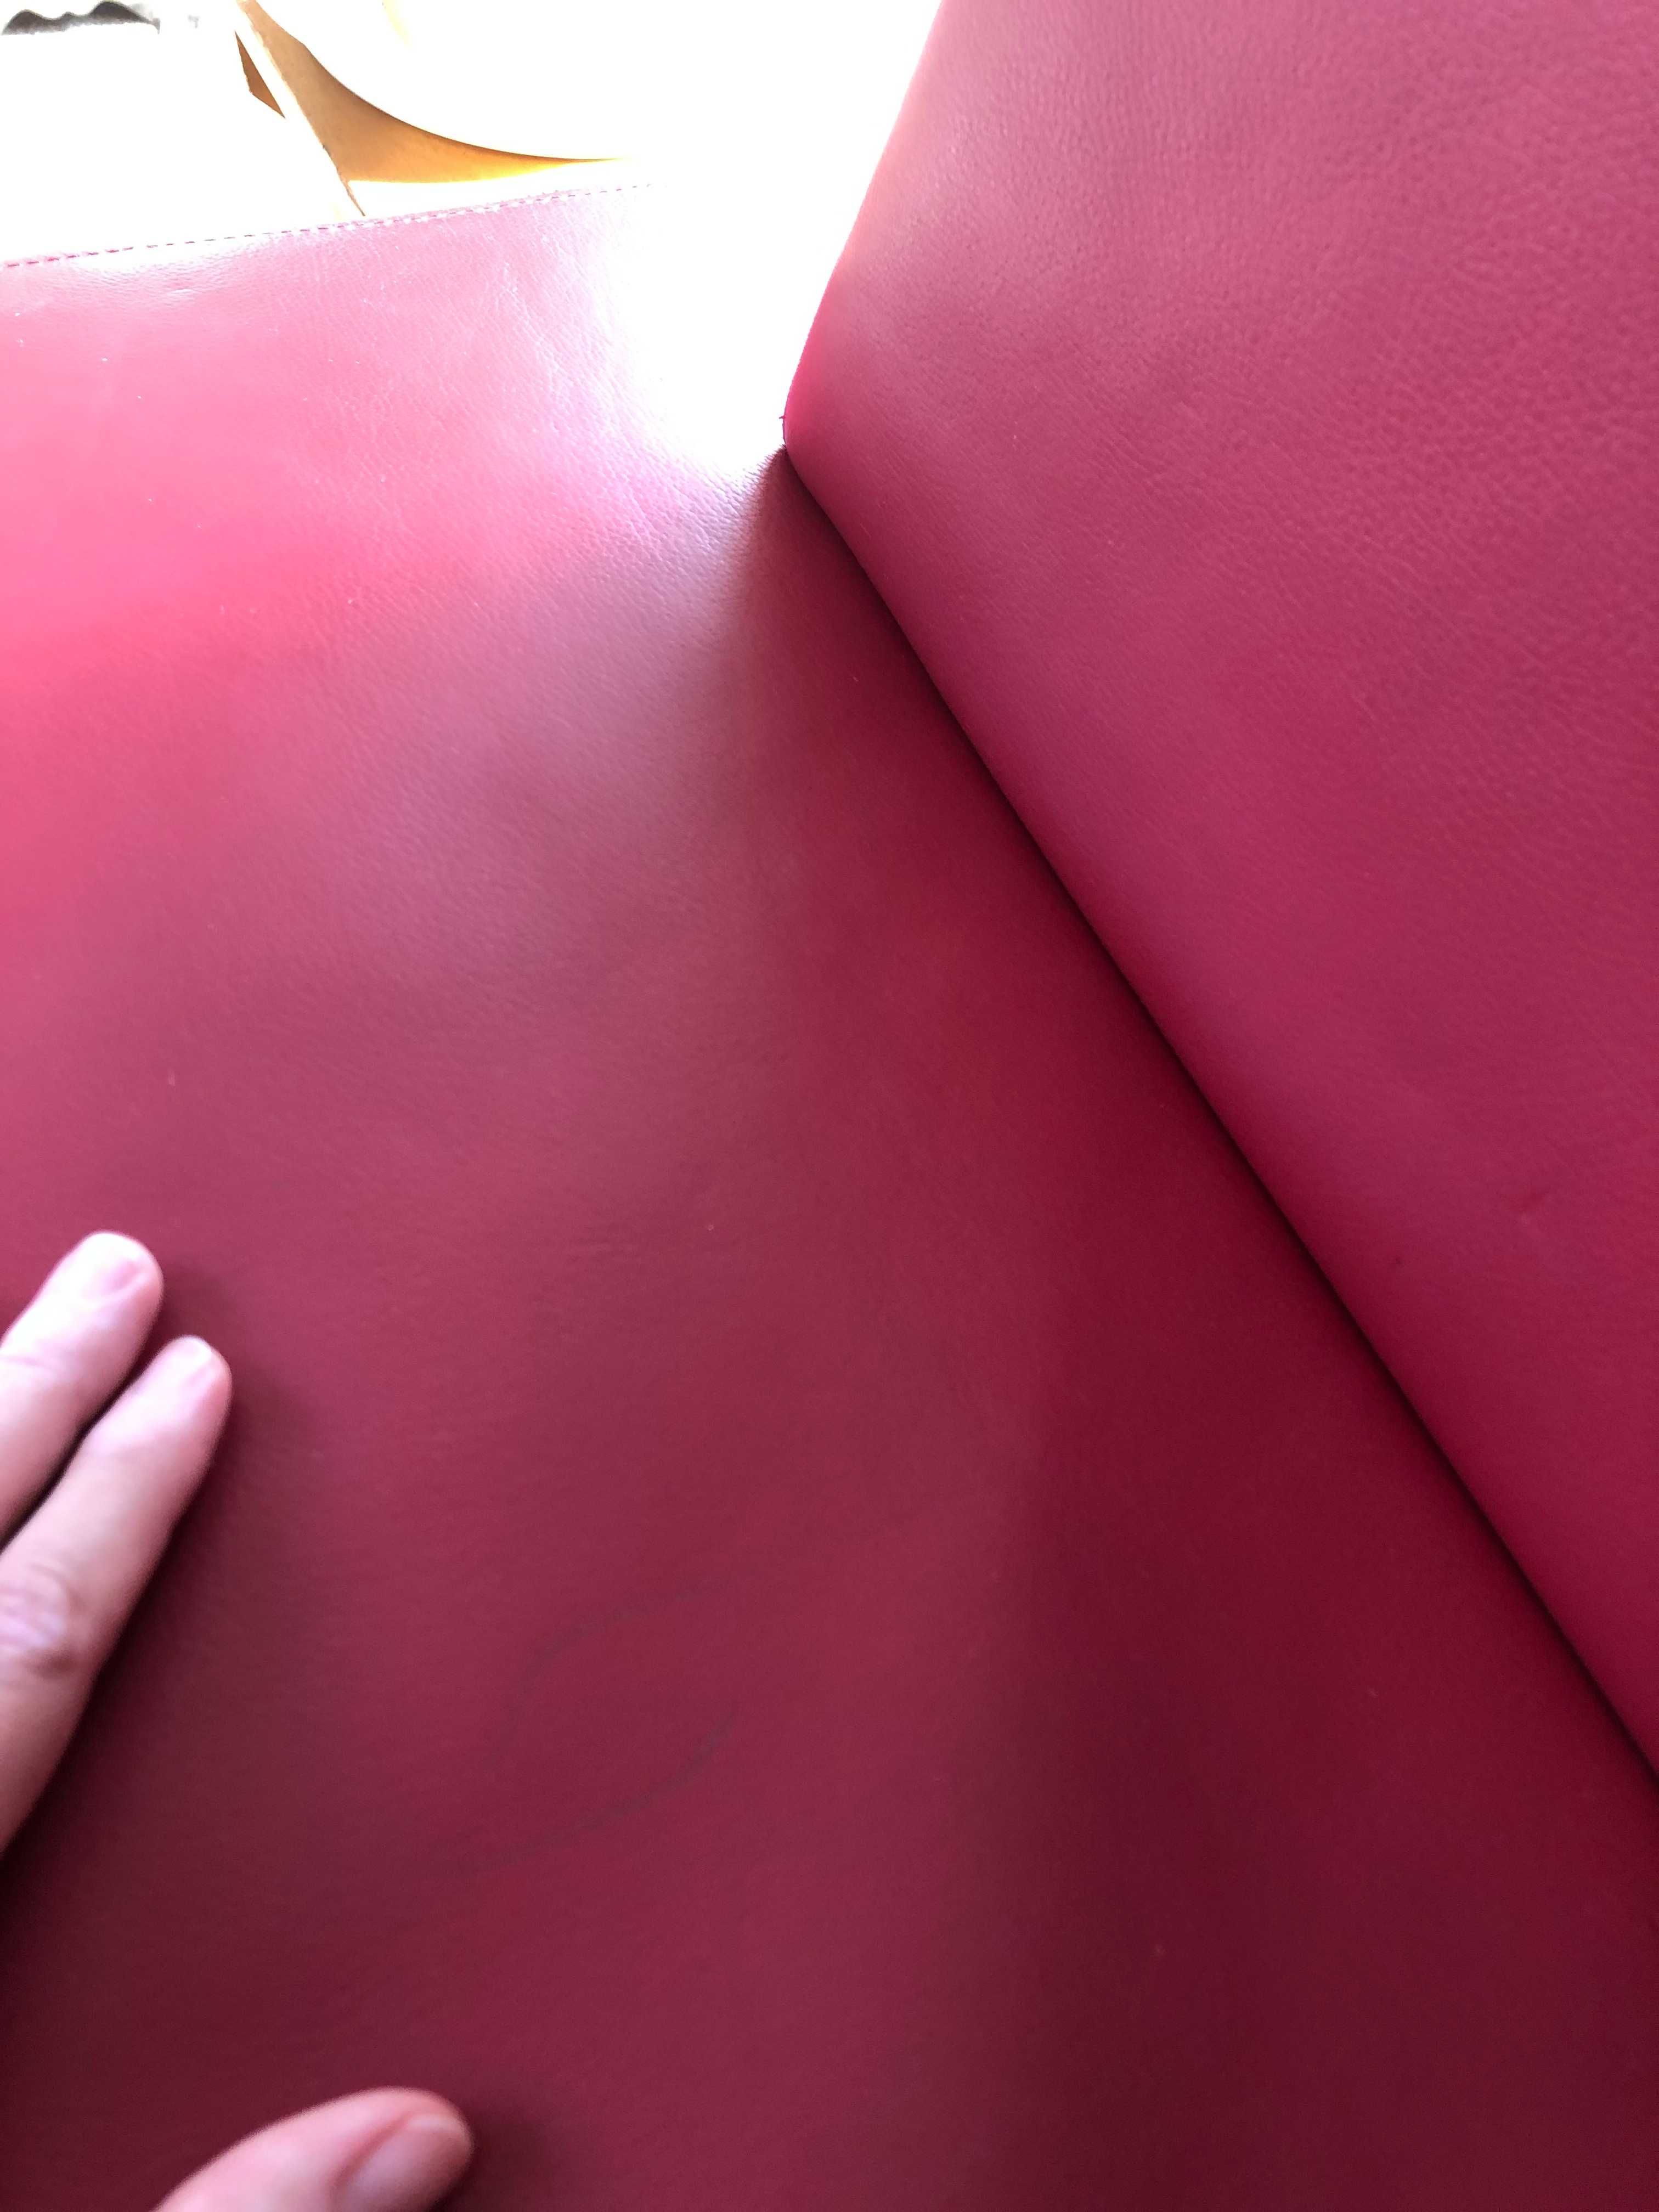 Czerwona skórzana 2-osobowa kanapa / sofa